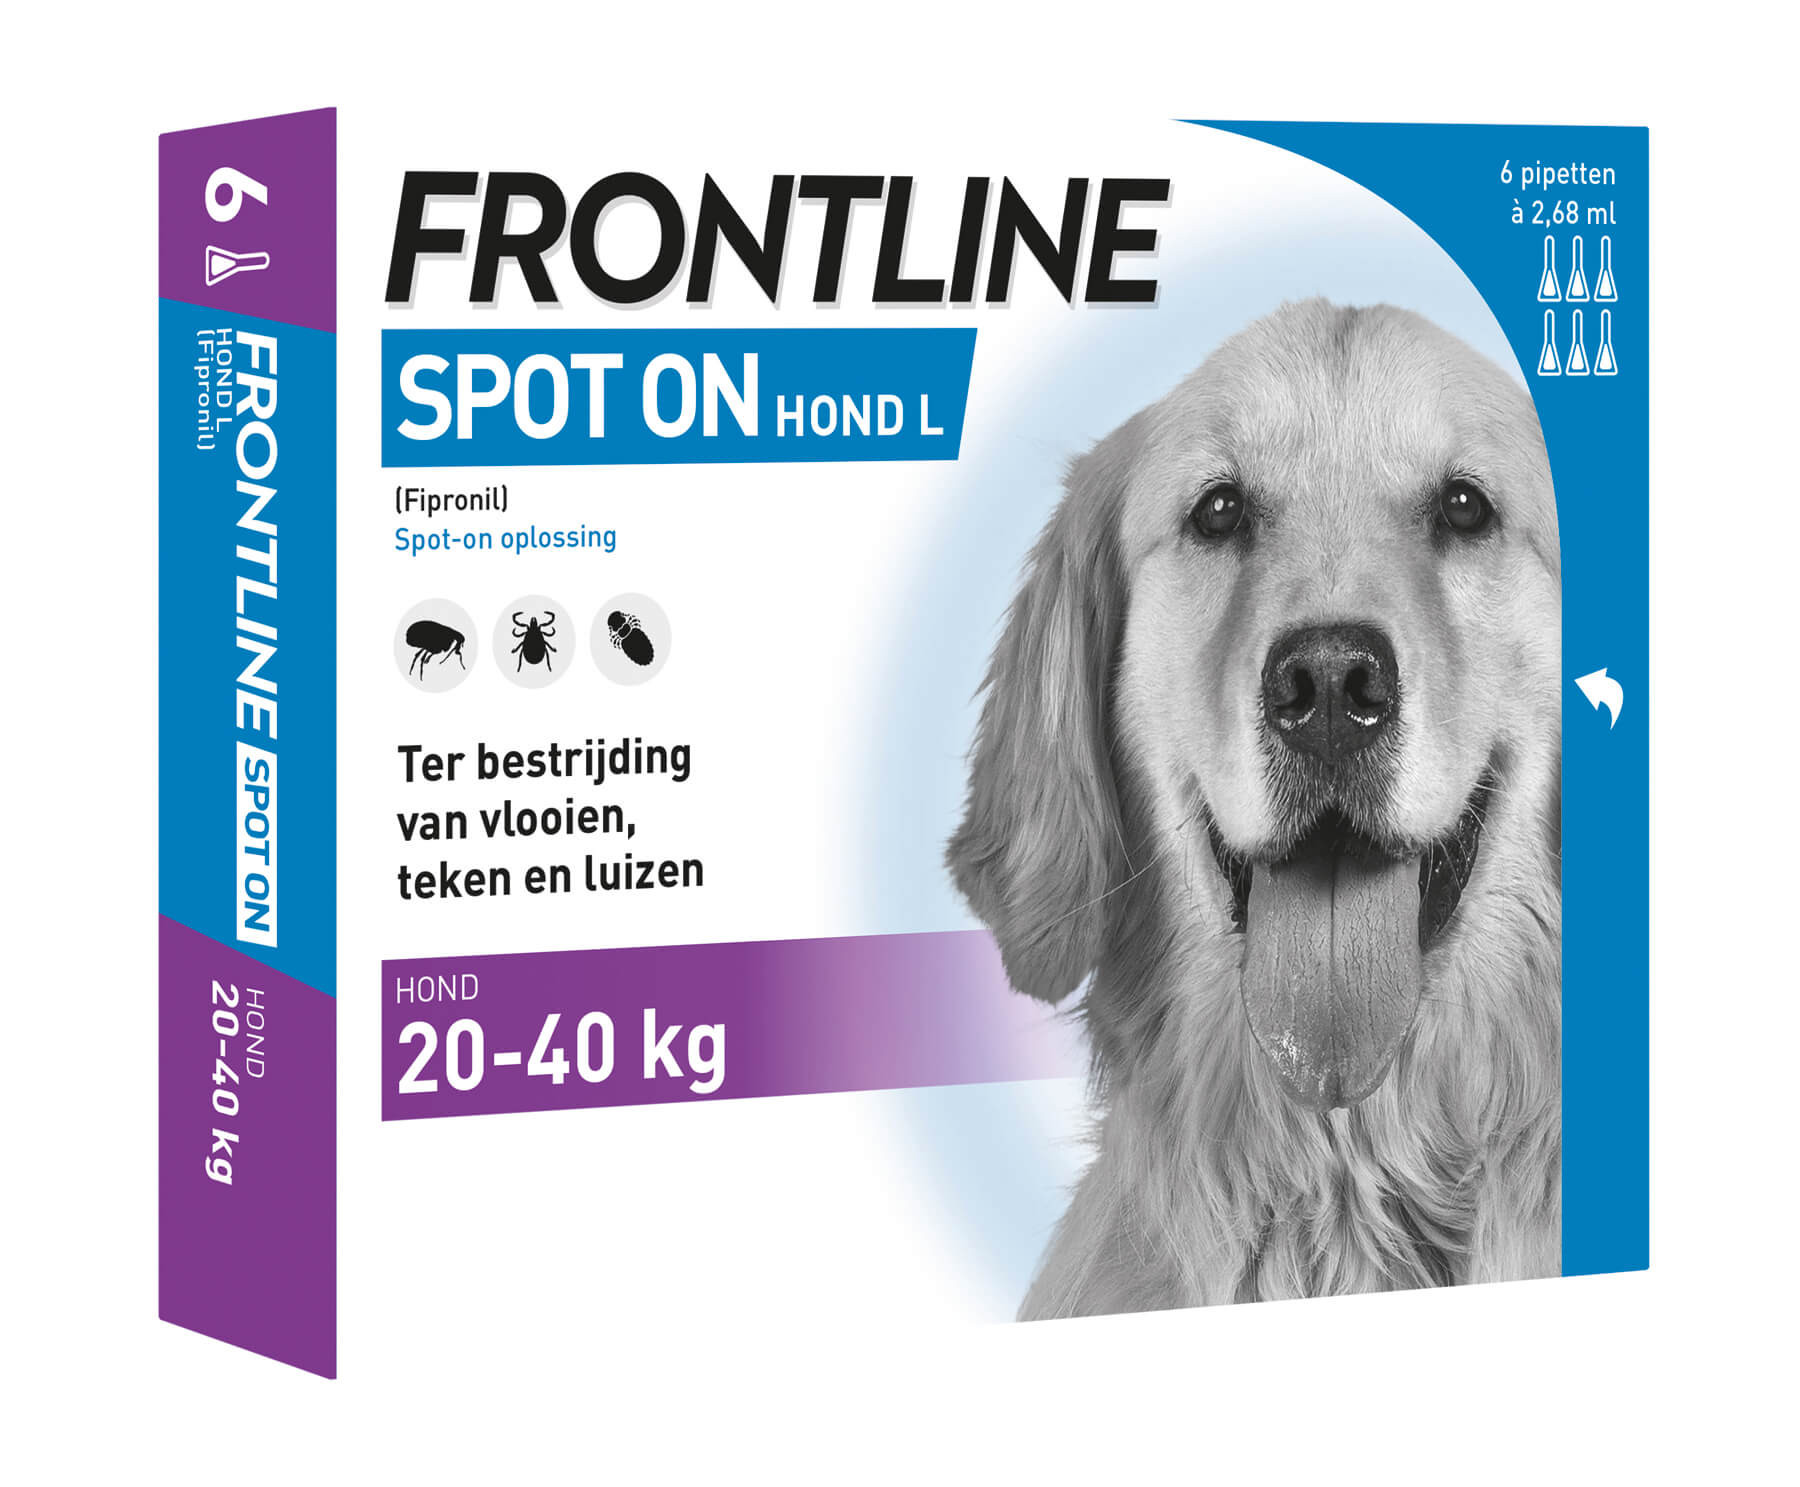 Afbeelding Frontline Spot on Hond L 4 pipetten door Brekz.nl